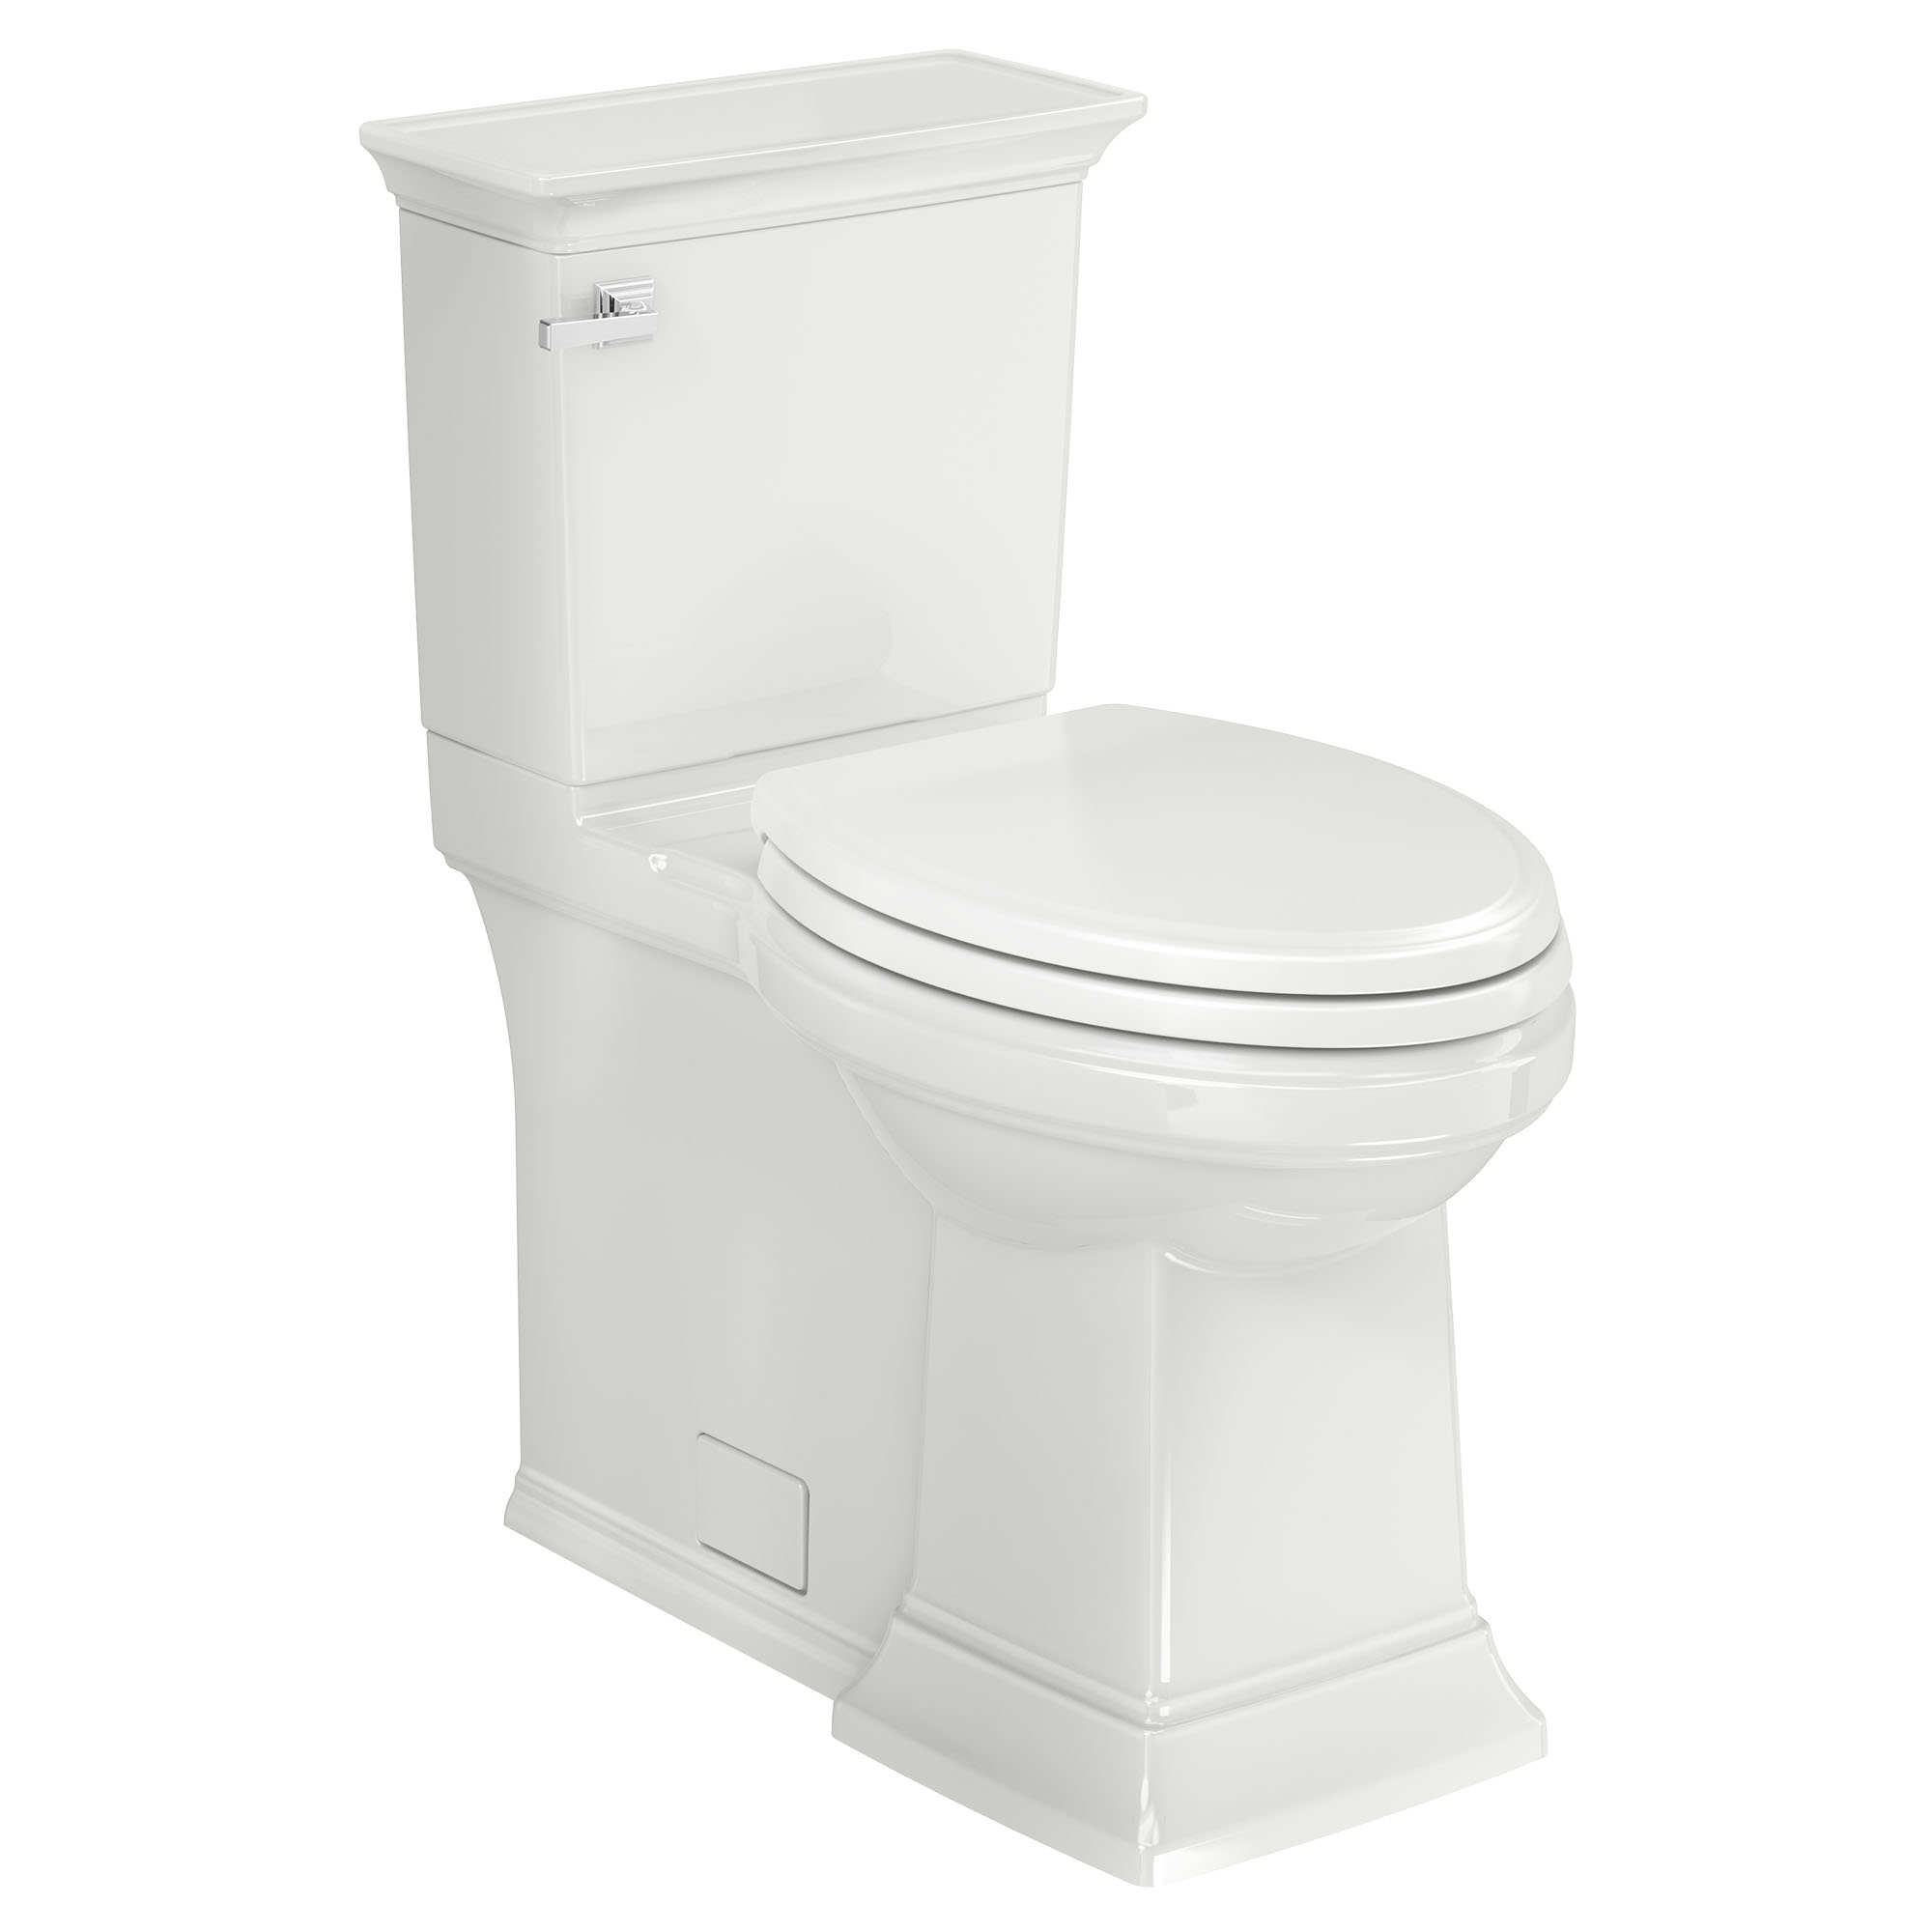 Toilette Town Square S à jupe, 2 pièces, 1,28 gpc/4,8 lpc, à cuvette allongée à hauteur de chaise avec siège